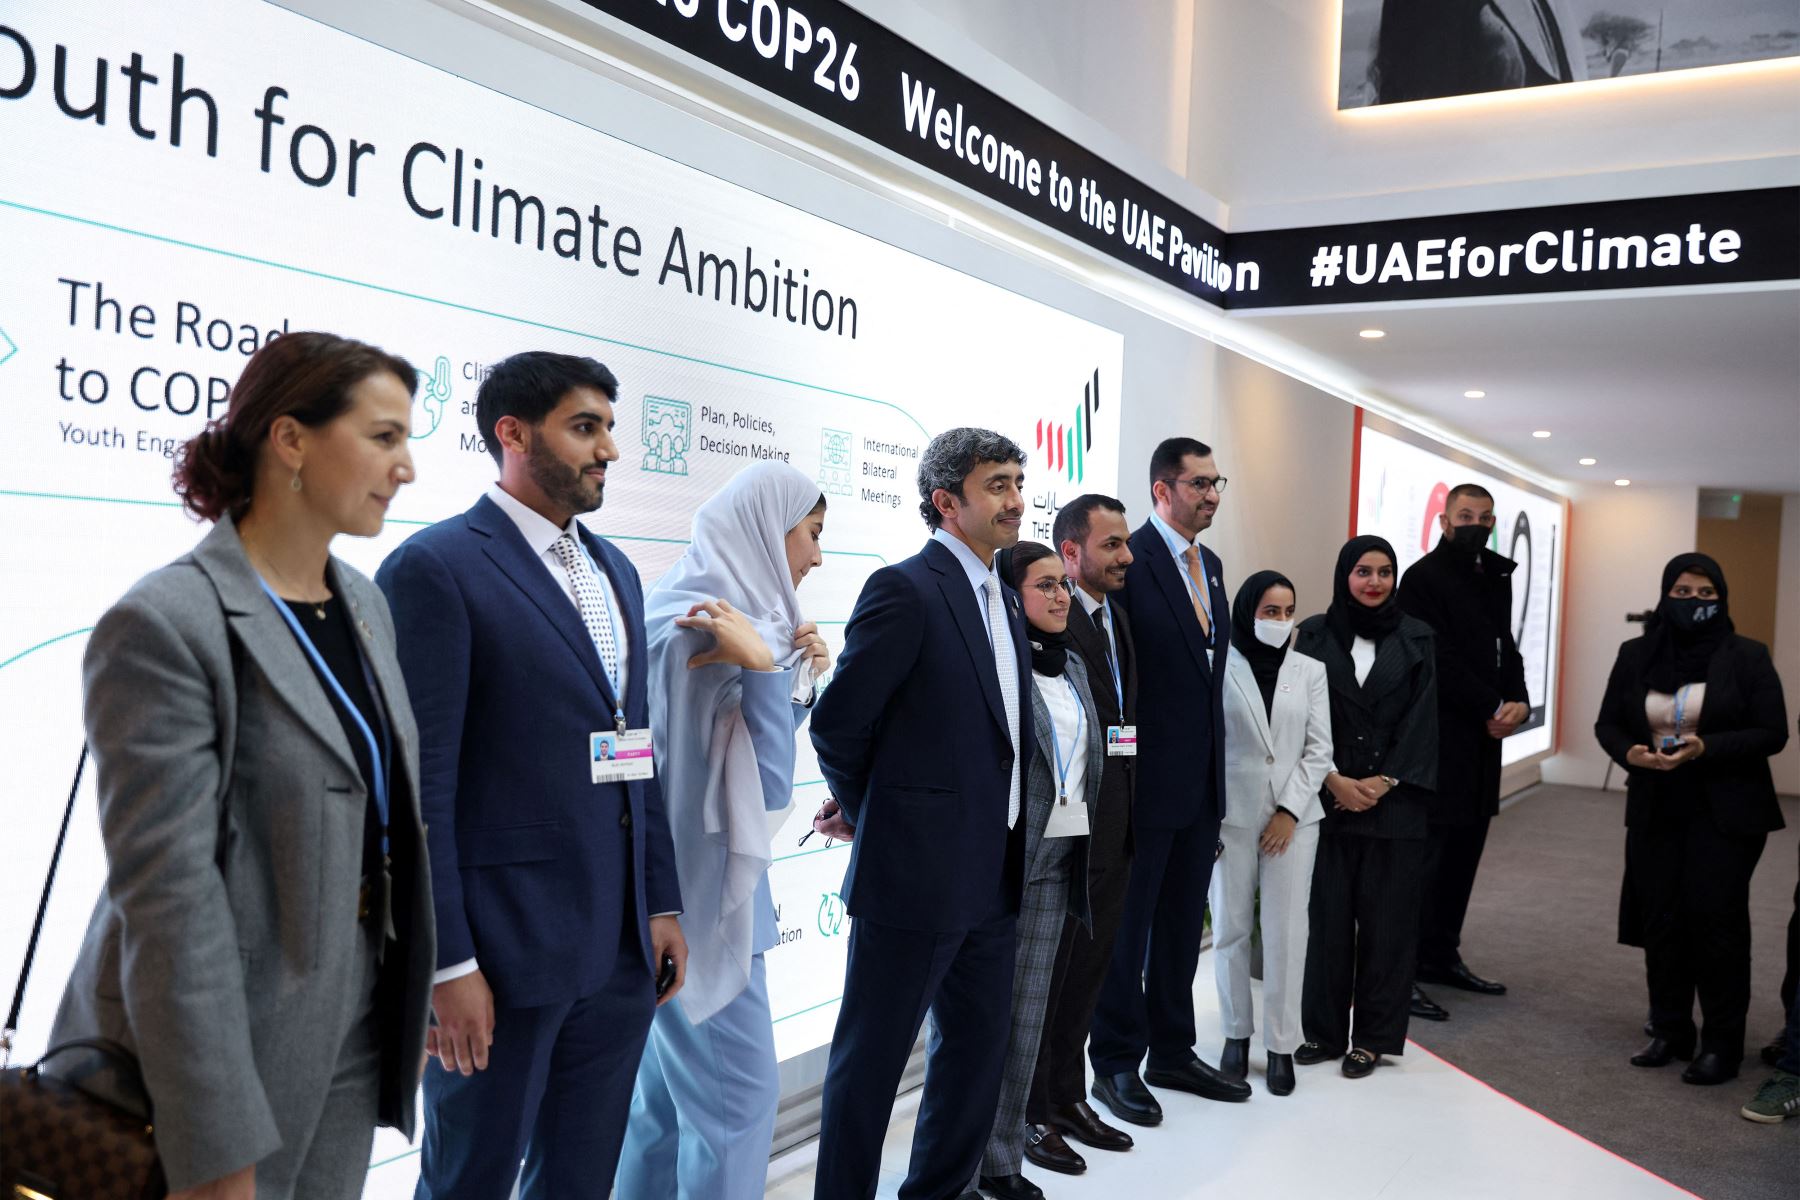 El ministro de Relaciones Exteriores de los EAU, Abdullah bin Zayed Al Nahyan , asiste a la Conferencia de las Naciones Unidas sobre el Cambio Climático COP26 en Glasgow, Escocia.
Foto: AFP